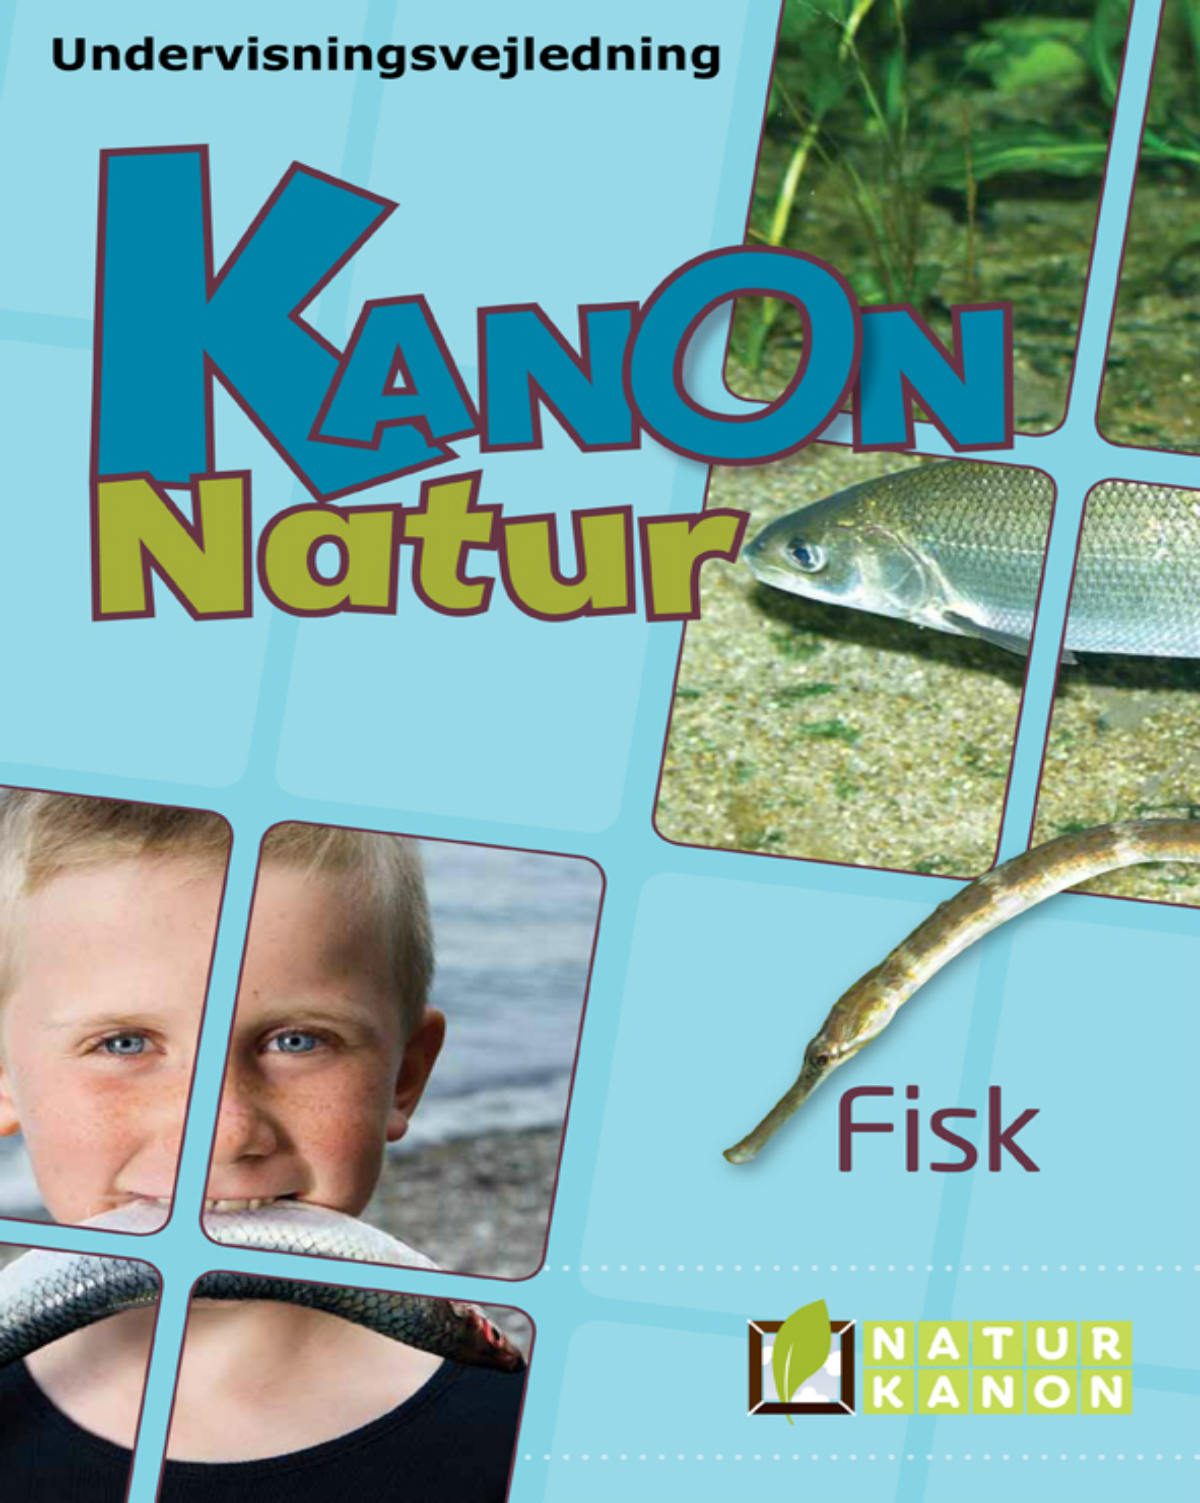 Undervisningsvejledningen Kanon natur om fisk